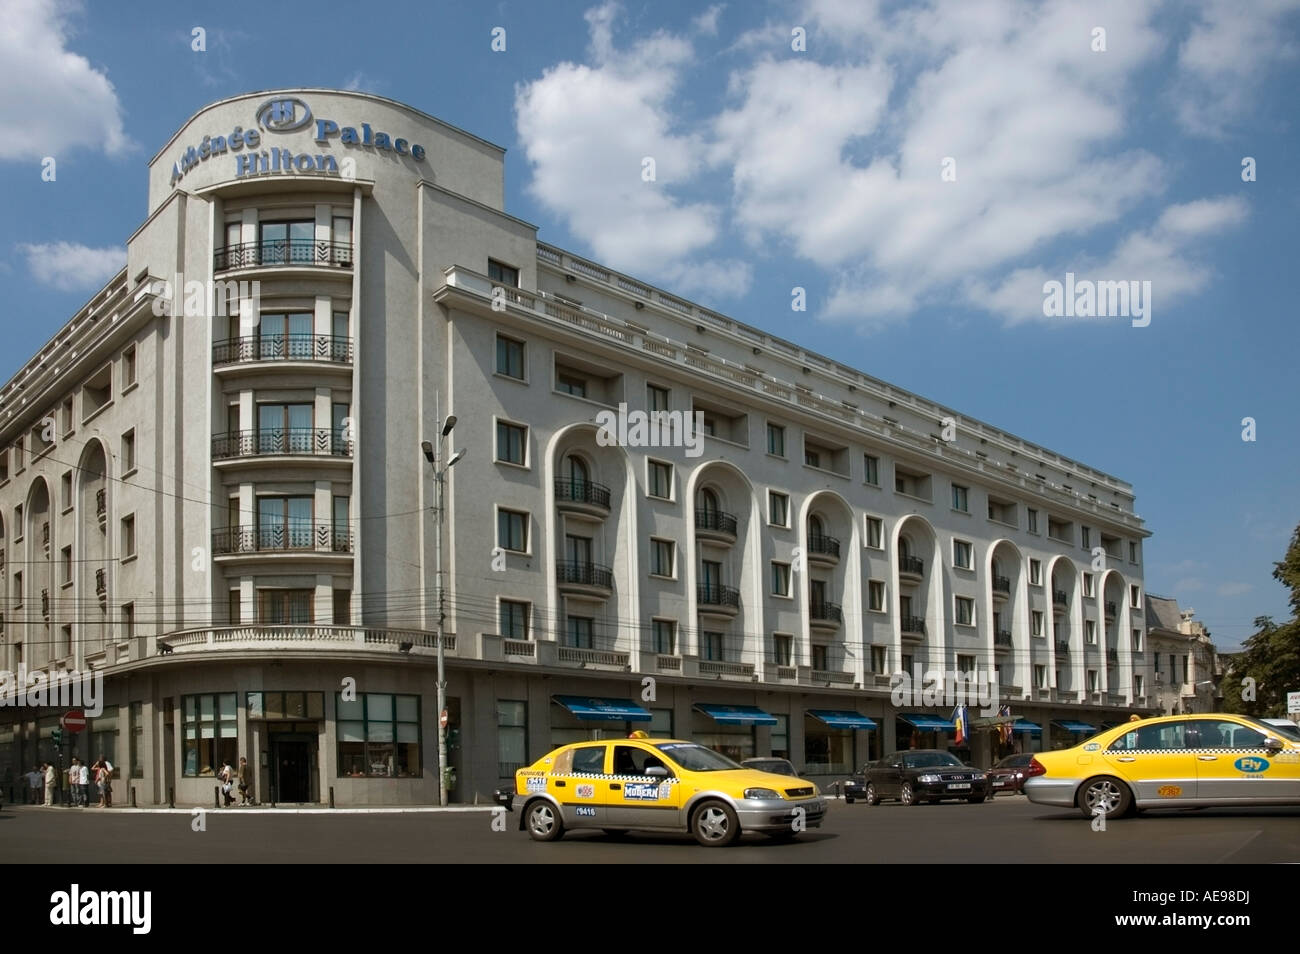 Athenee Palace Hilton Hotel Bucharest Stock Photos Athenee